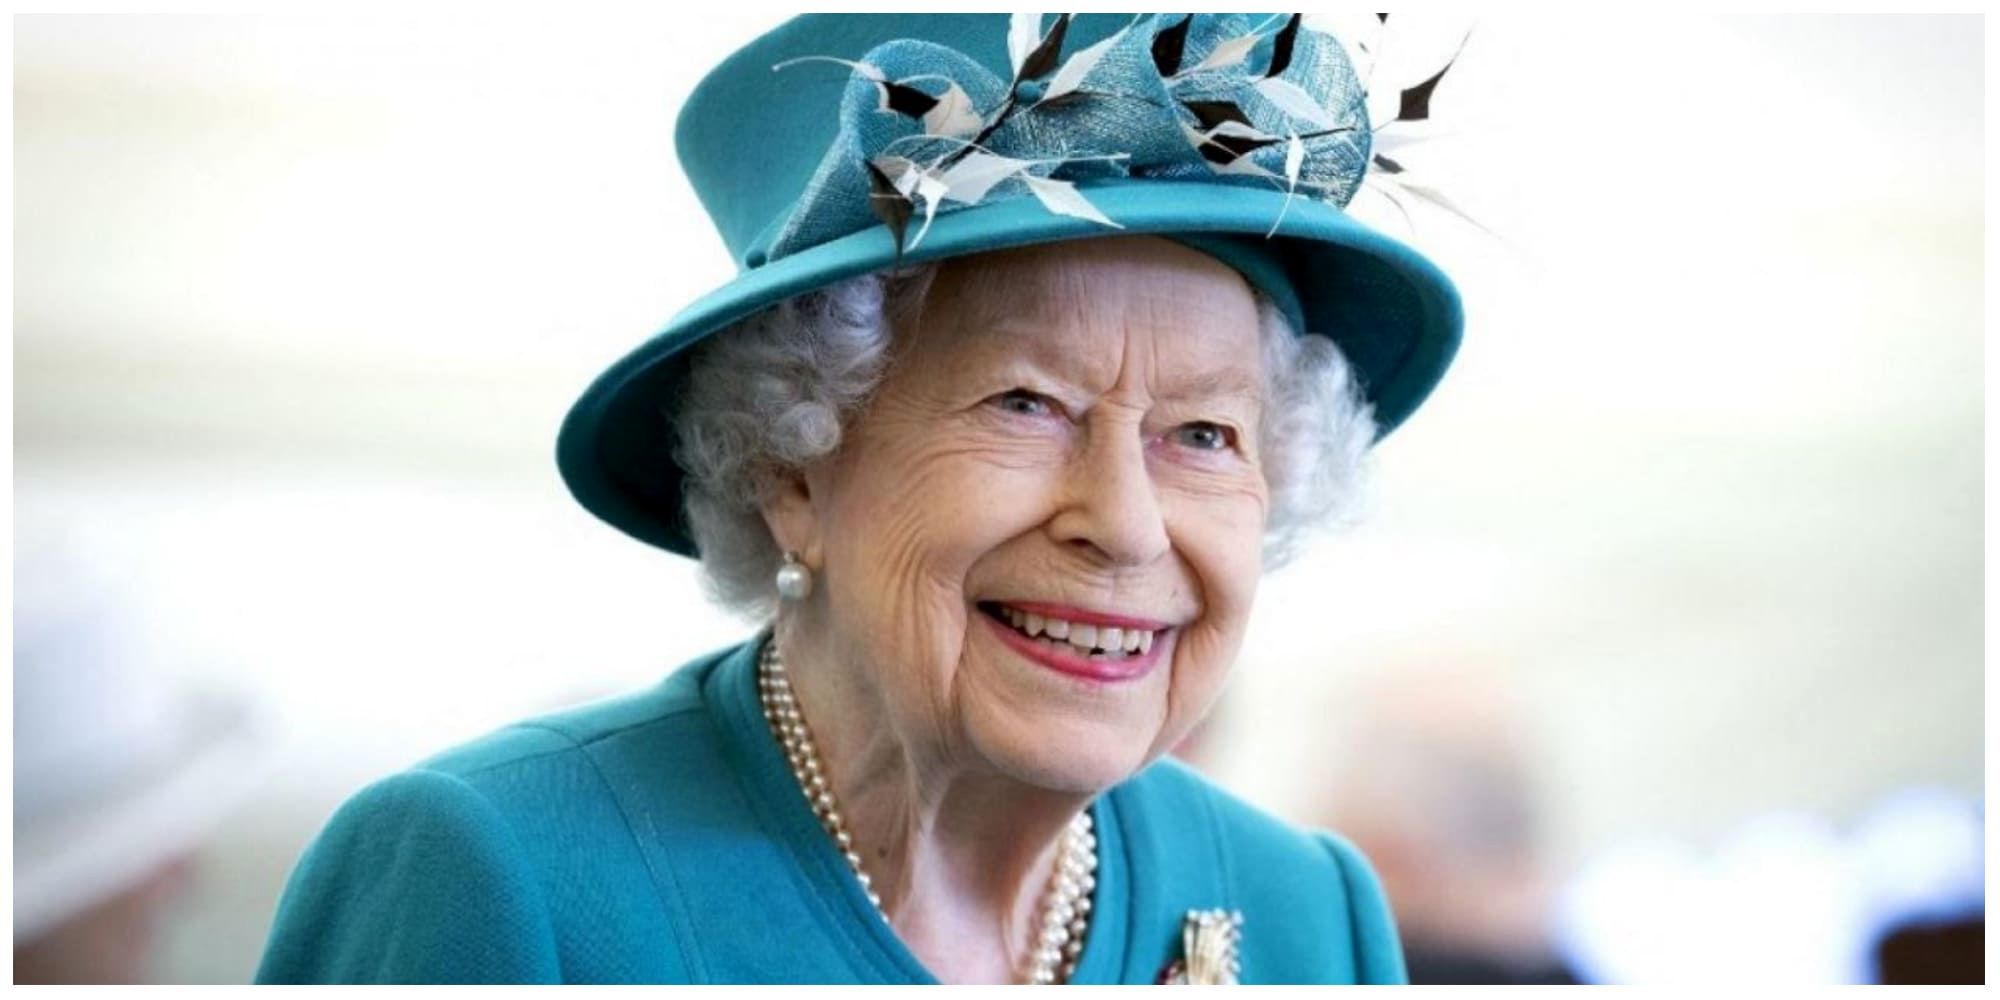 حال ملکه الیزابت وخیم است /اعضای خانواده بر بالین ملکه